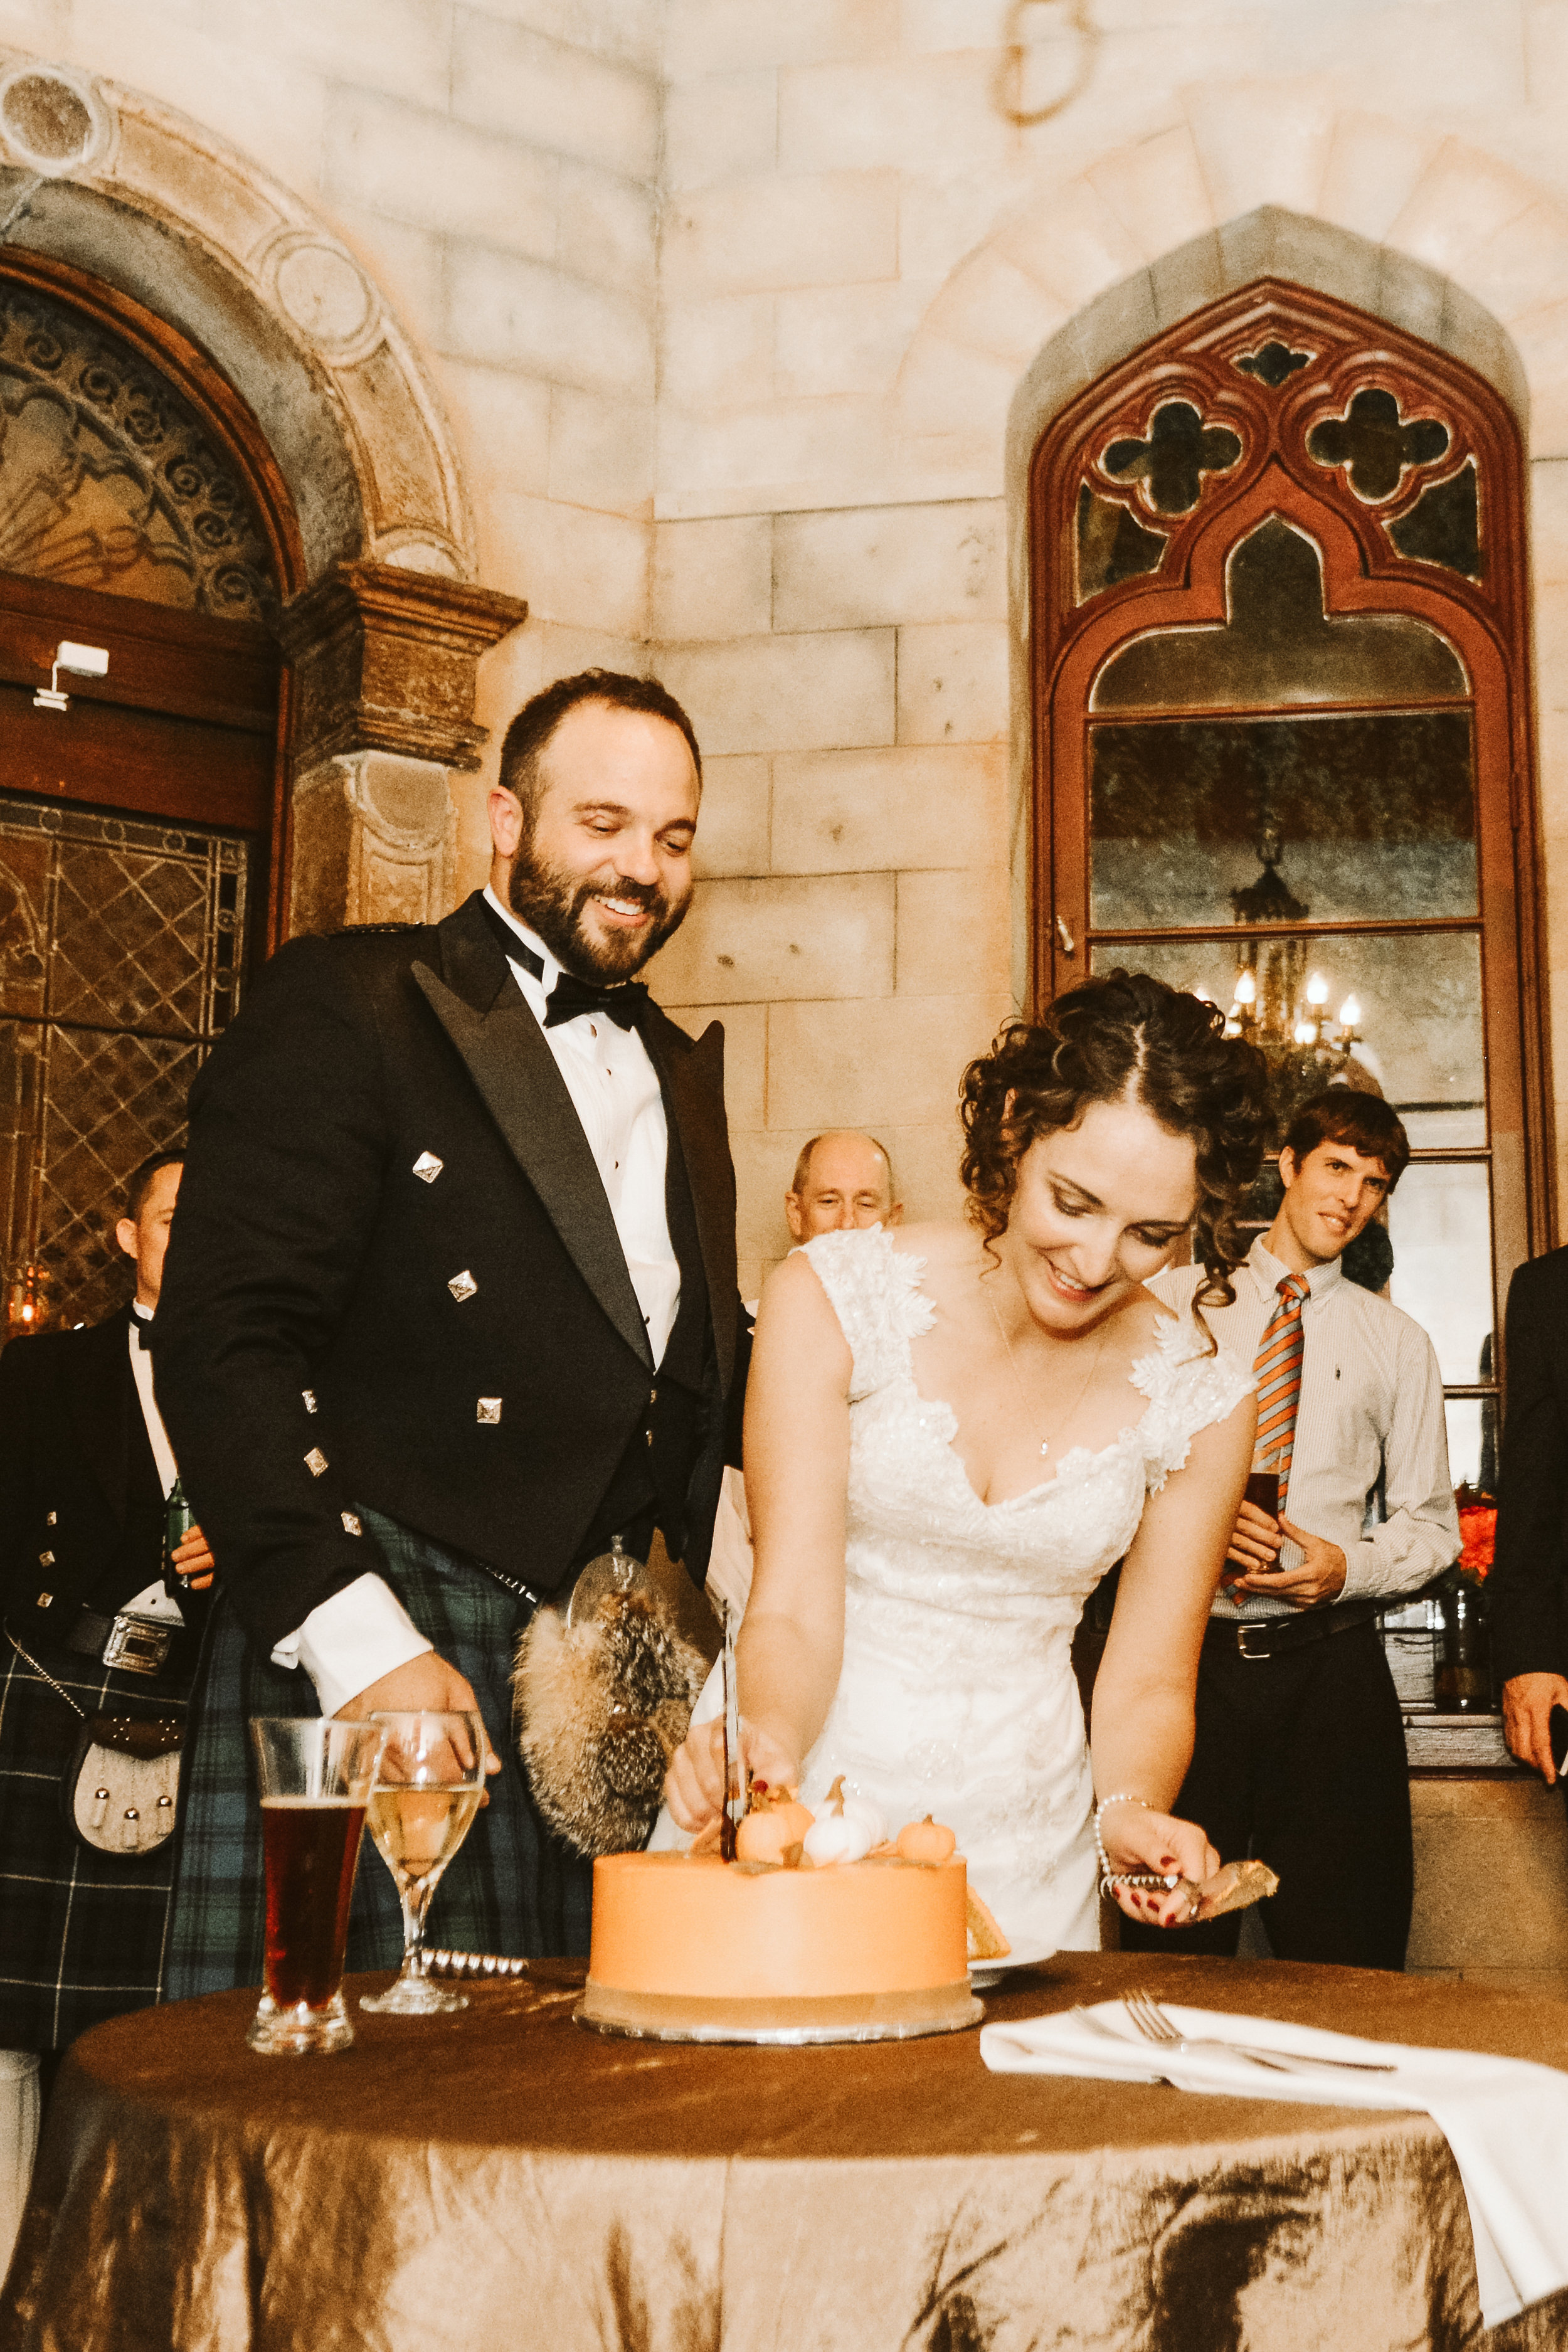 adrienne and greg's wedding 2018 edits-63.jpg